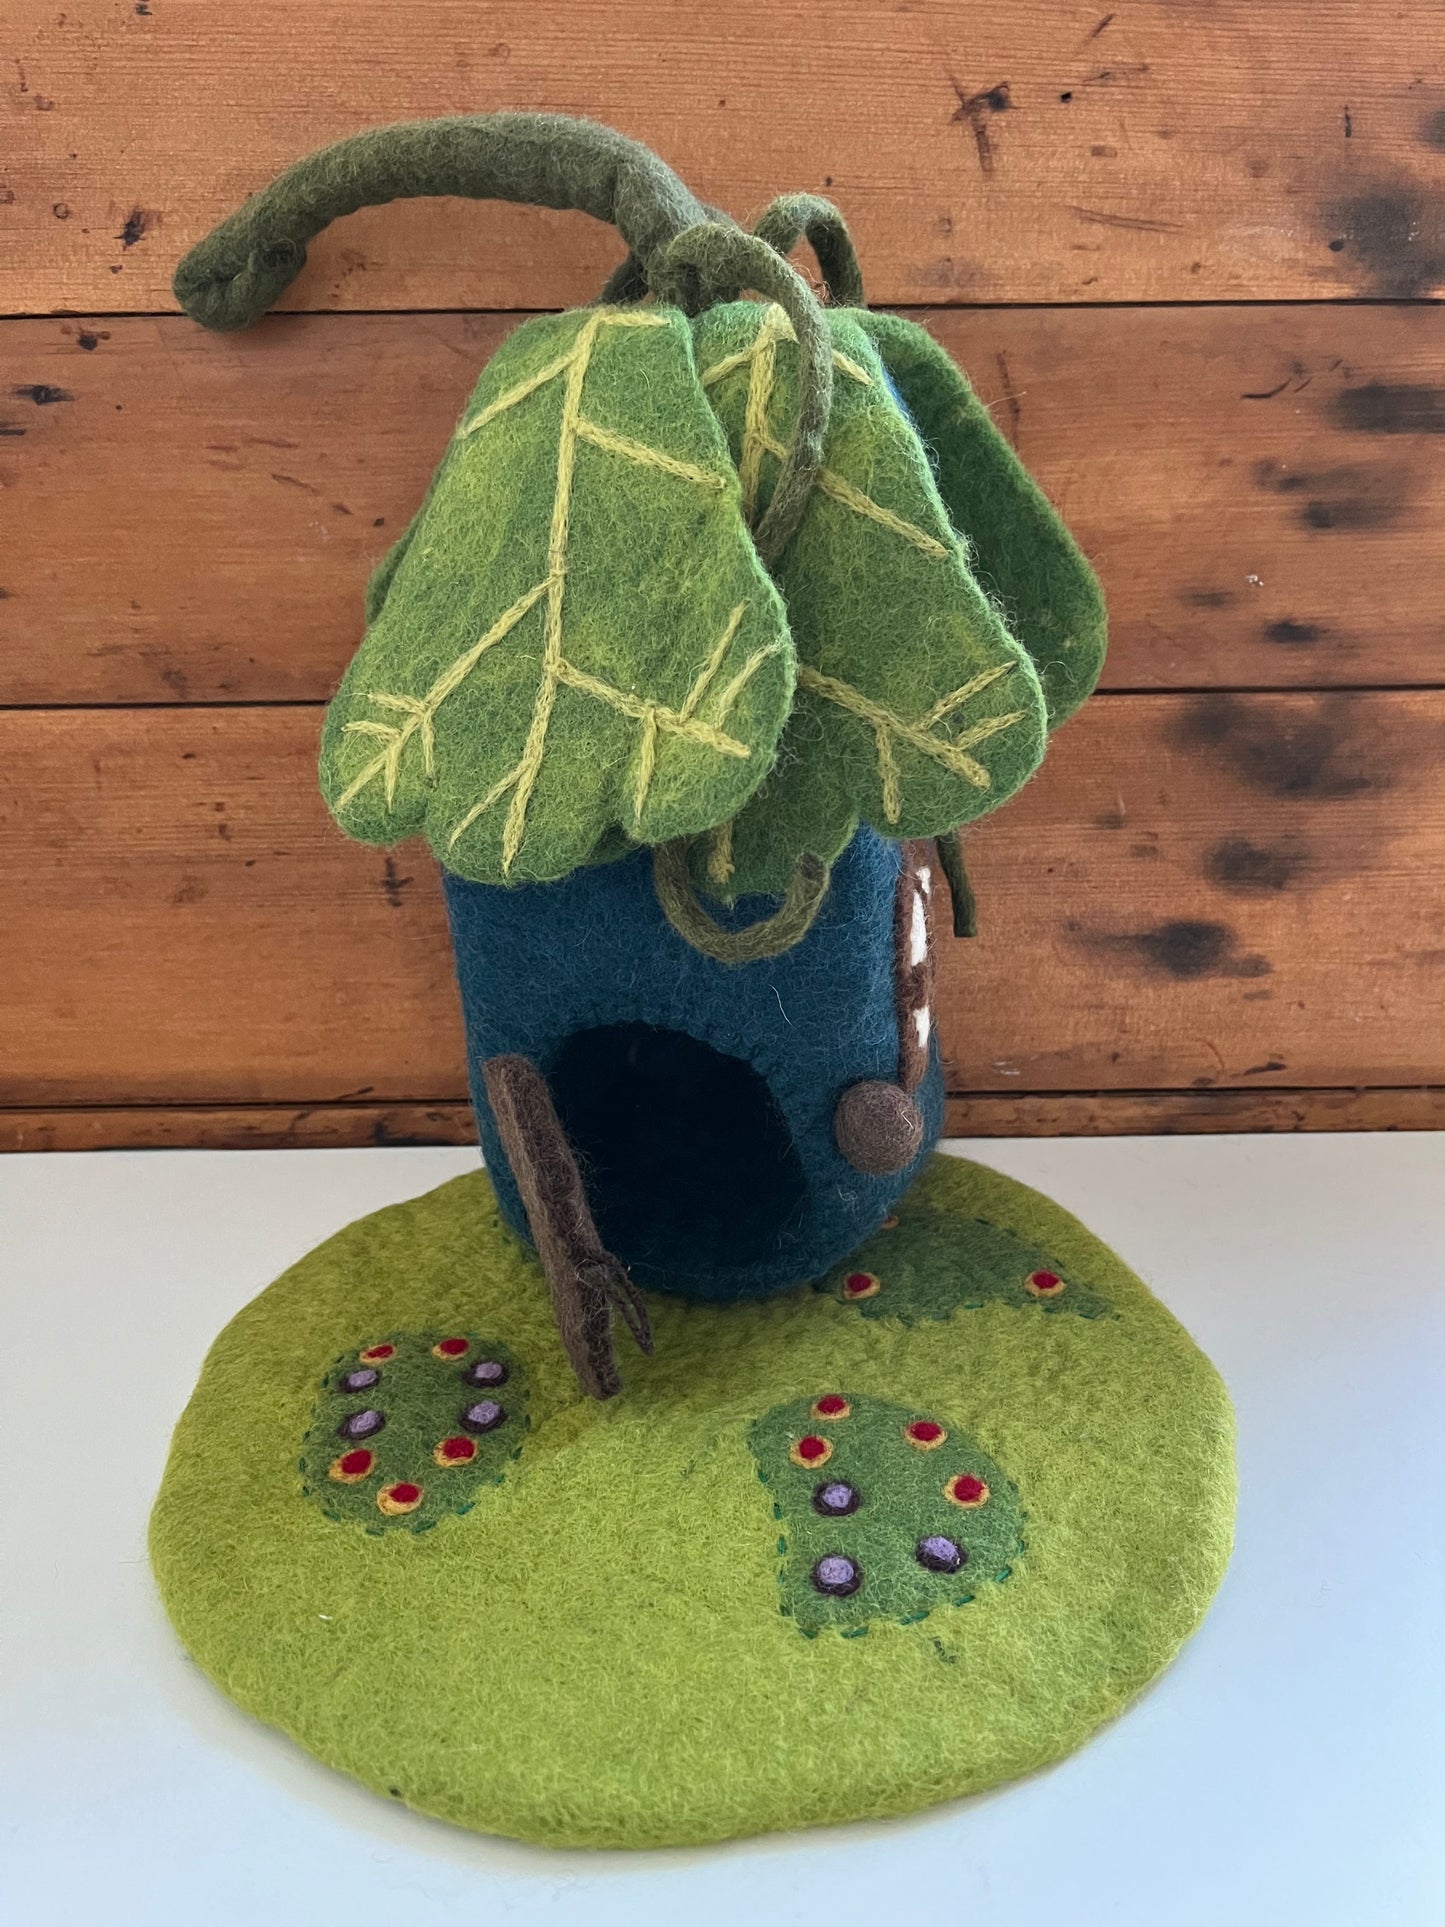 Dollhouse Play - FELTED OAK LEAF FAIRY HOUSE, with mat